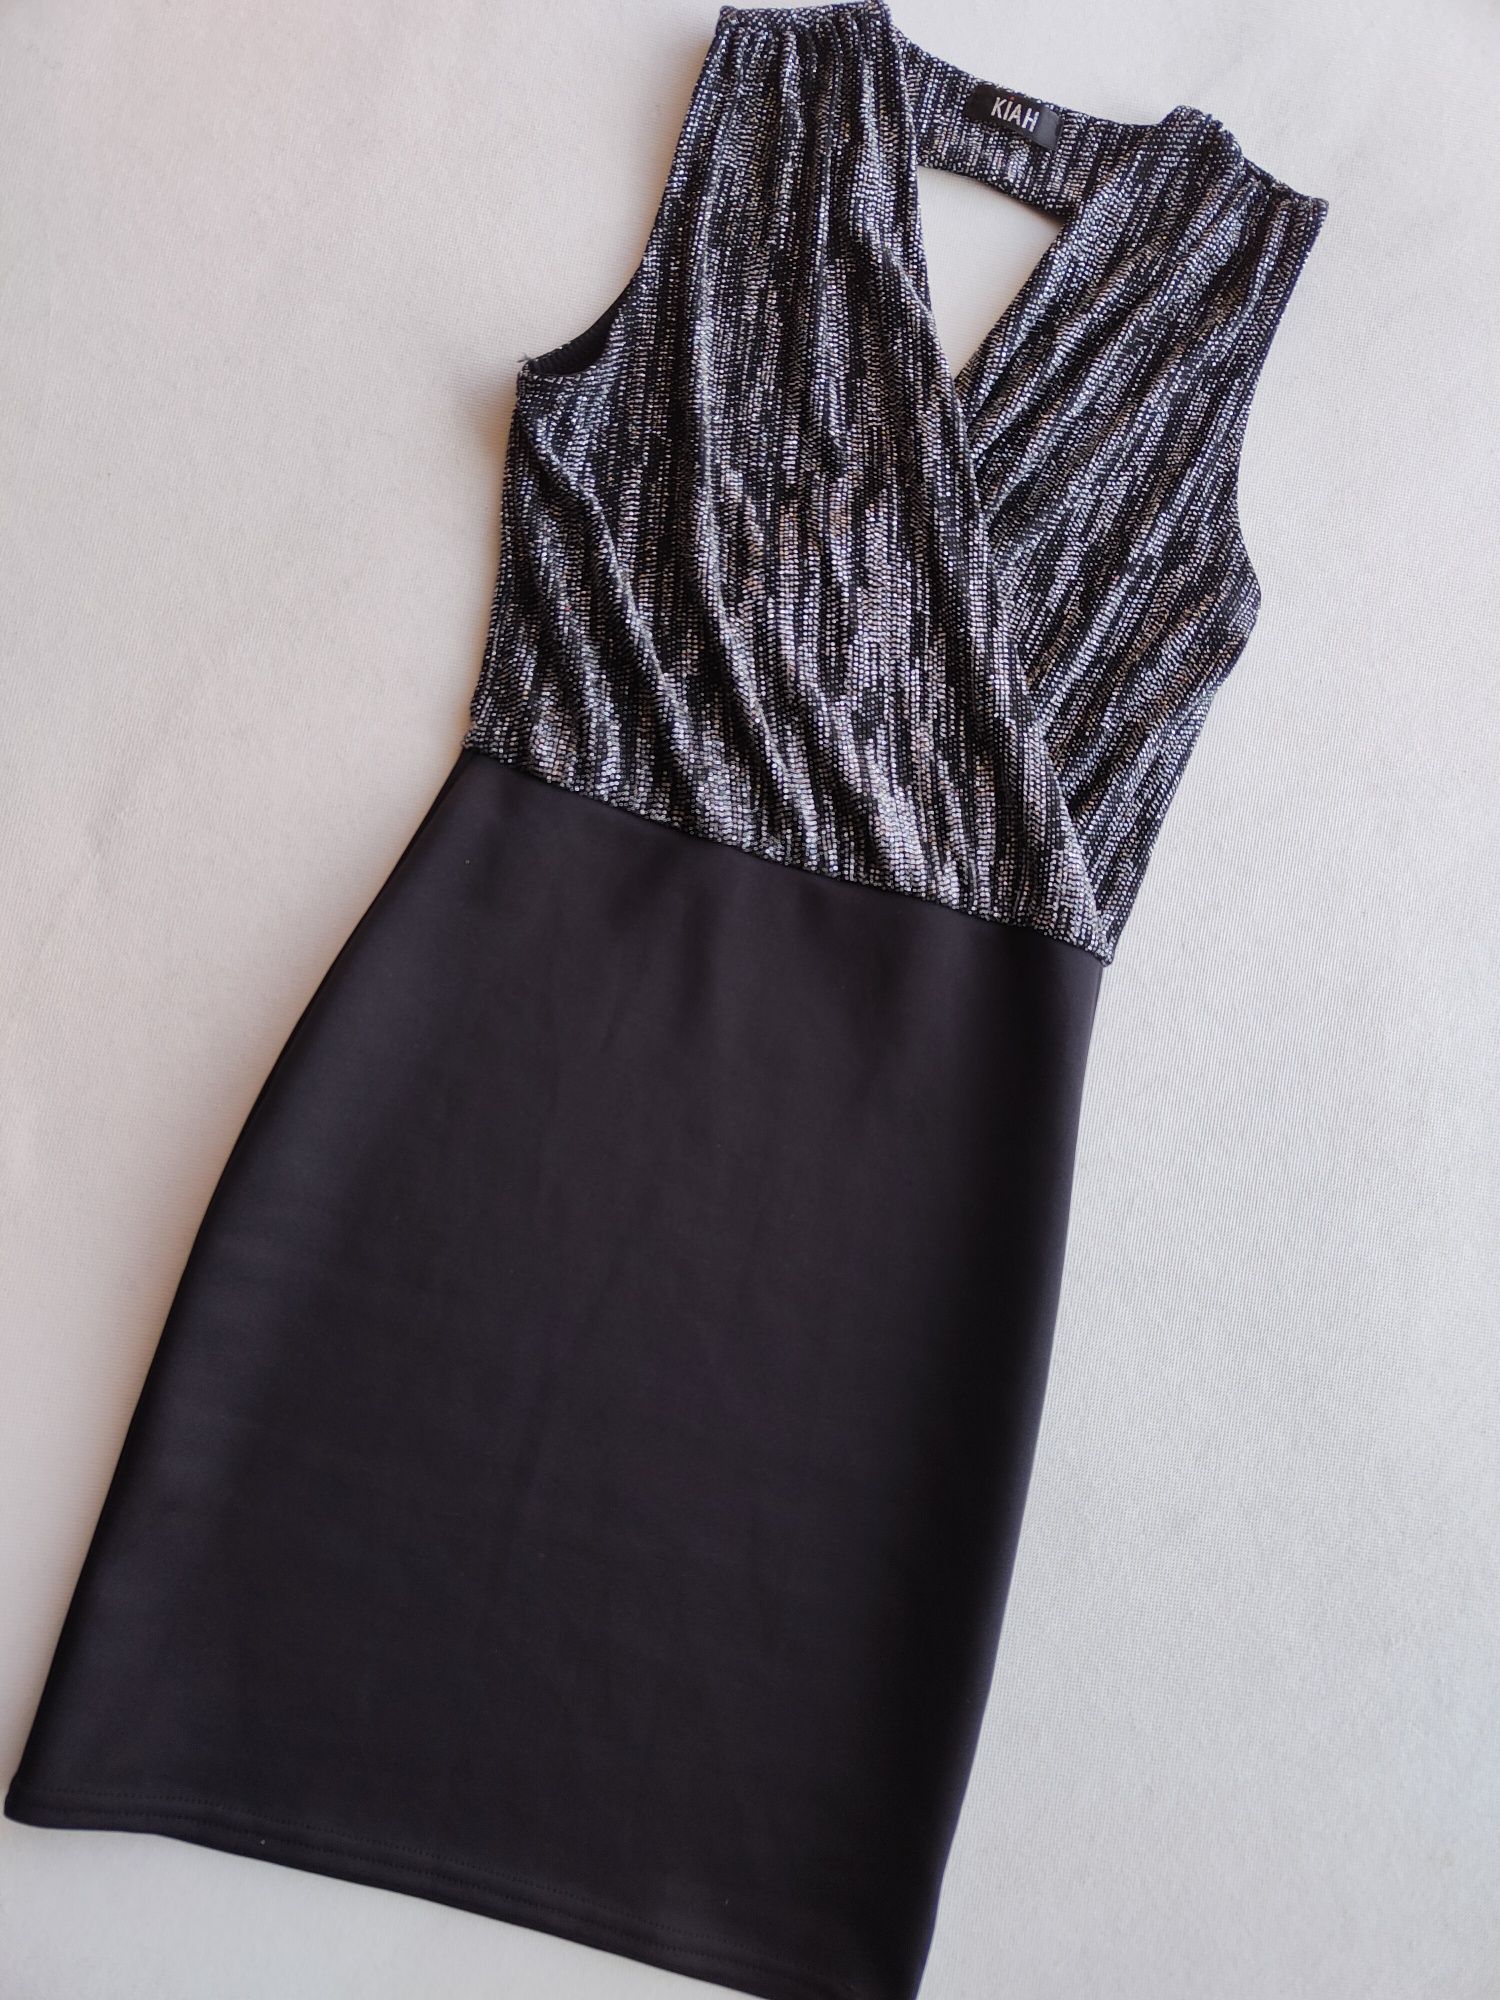 Czarna błyszcząca sukienka KIAH z dekoltem rozmiar 36